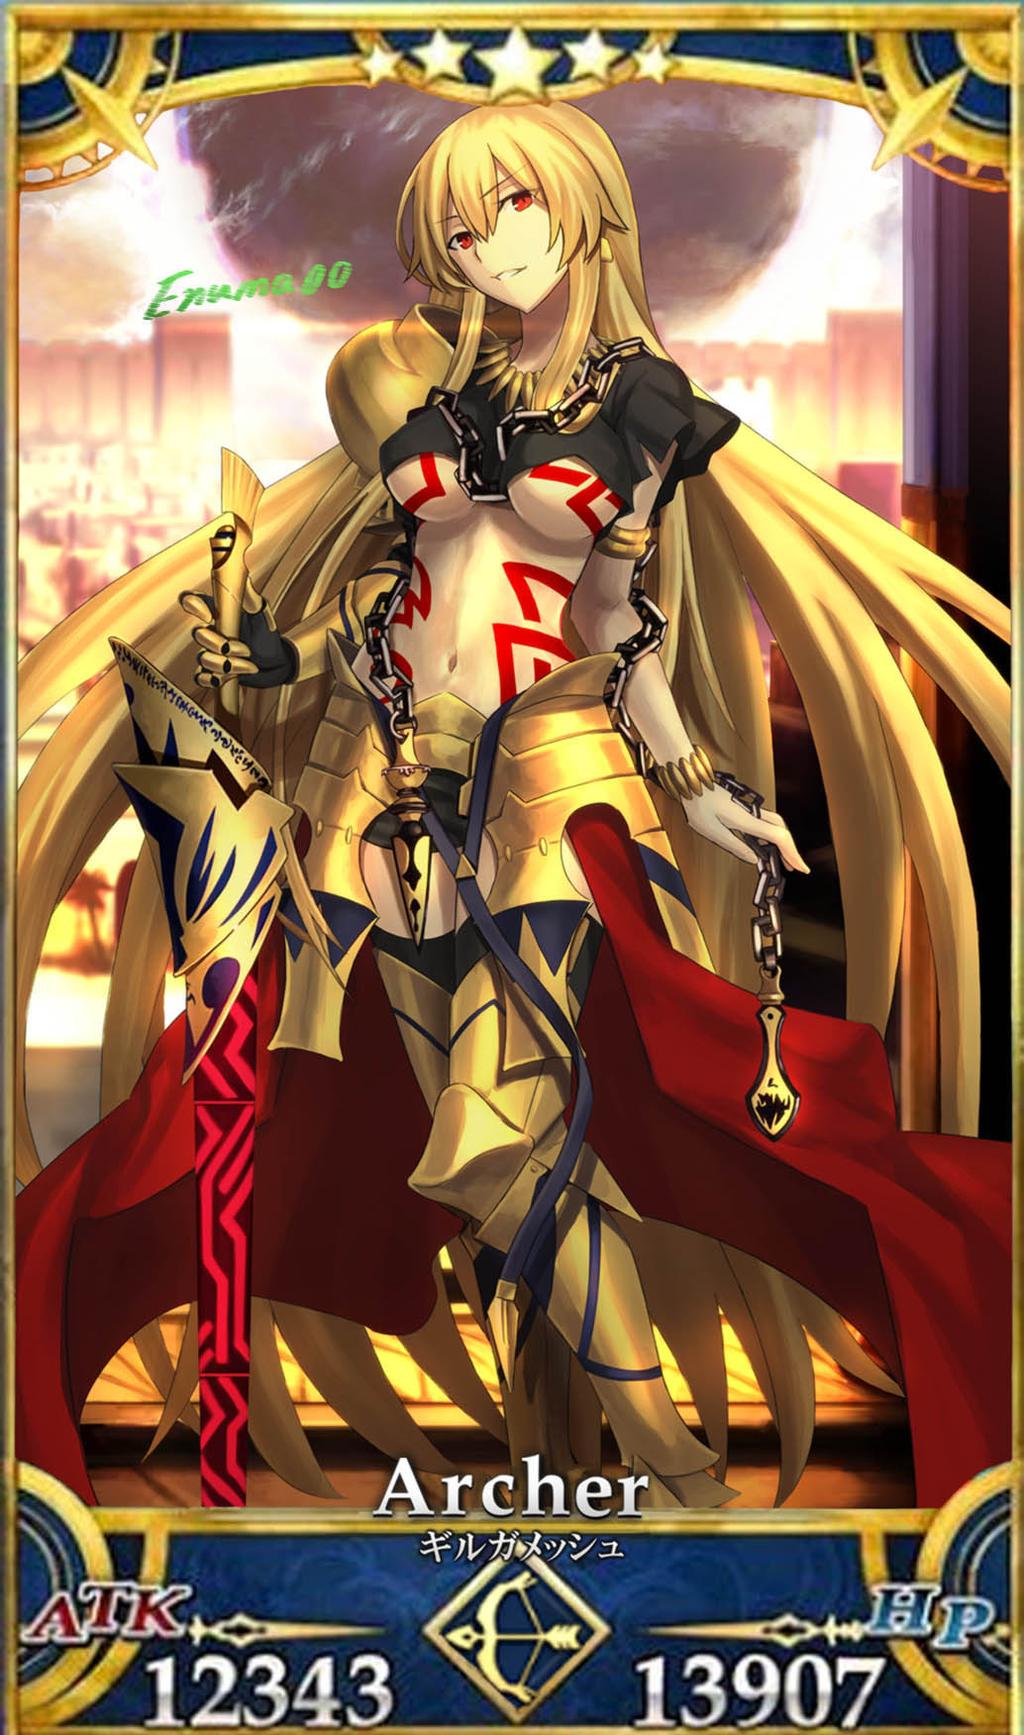 公式企画から生まれた女帝ギルガメッシュを Fate Grand Order のサーヴァント風に描いてみたイラスト でもにっしょん